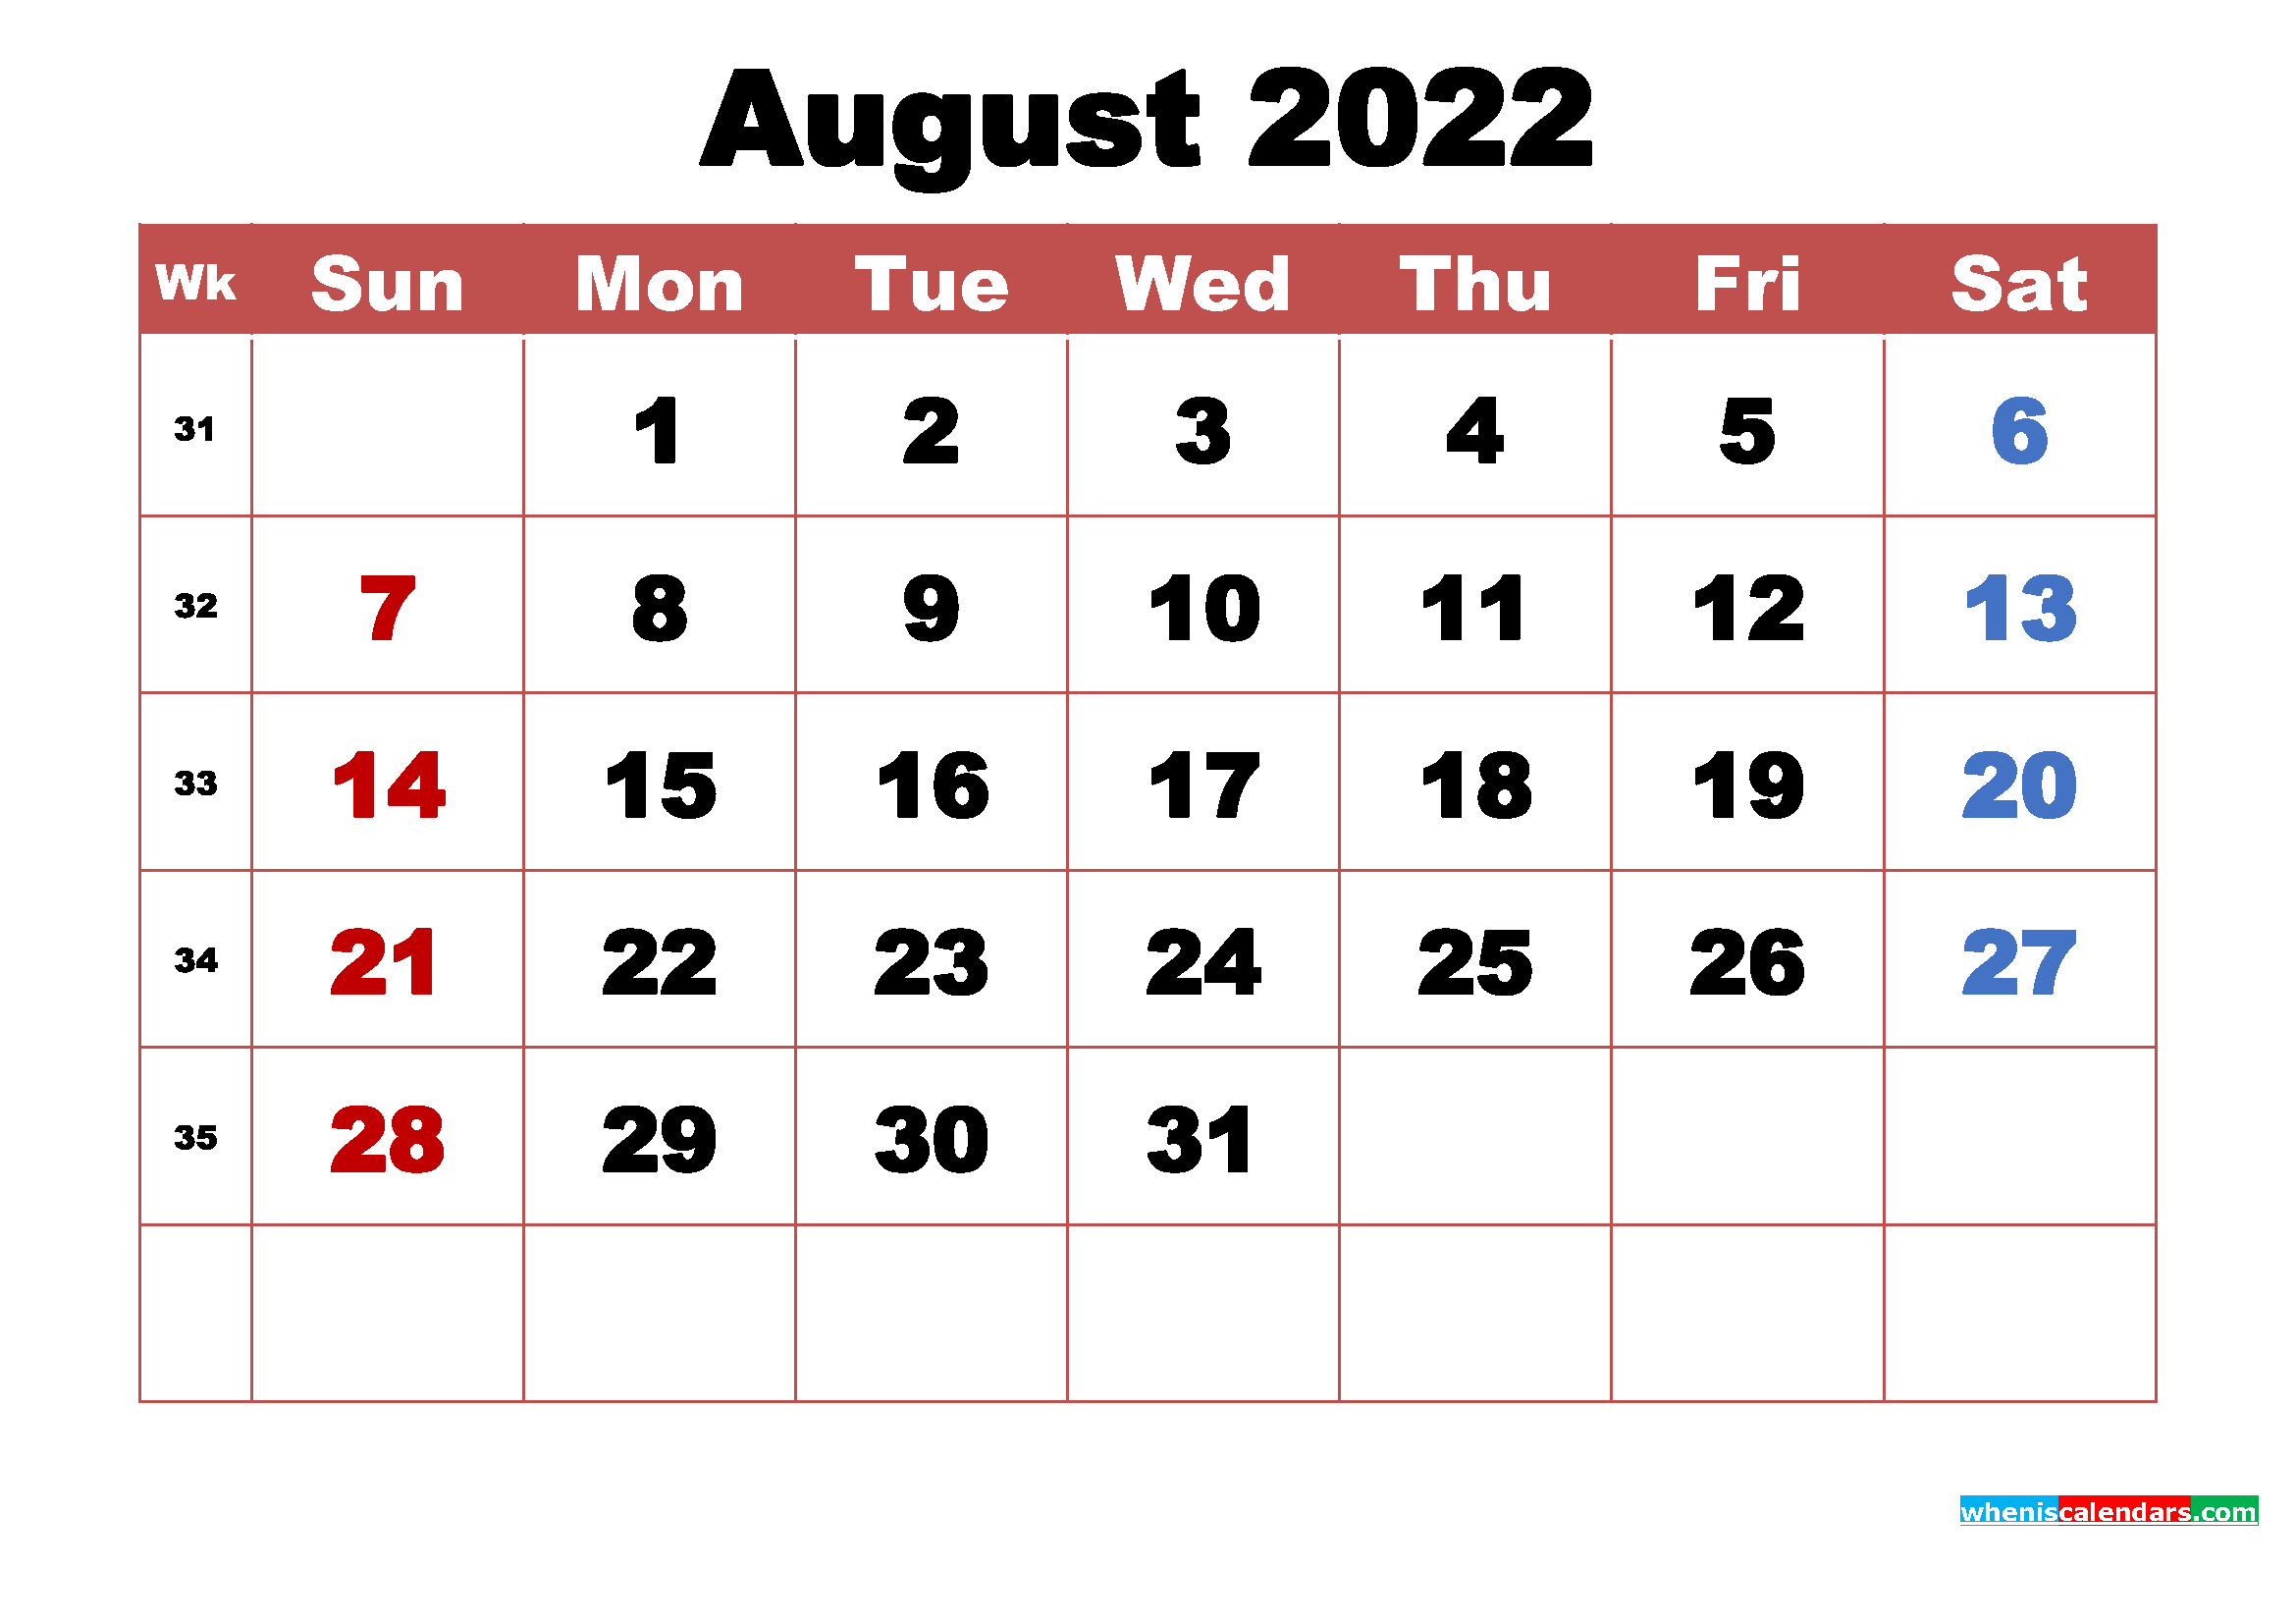 August 2022 Calendar Wallpapers High Resolution